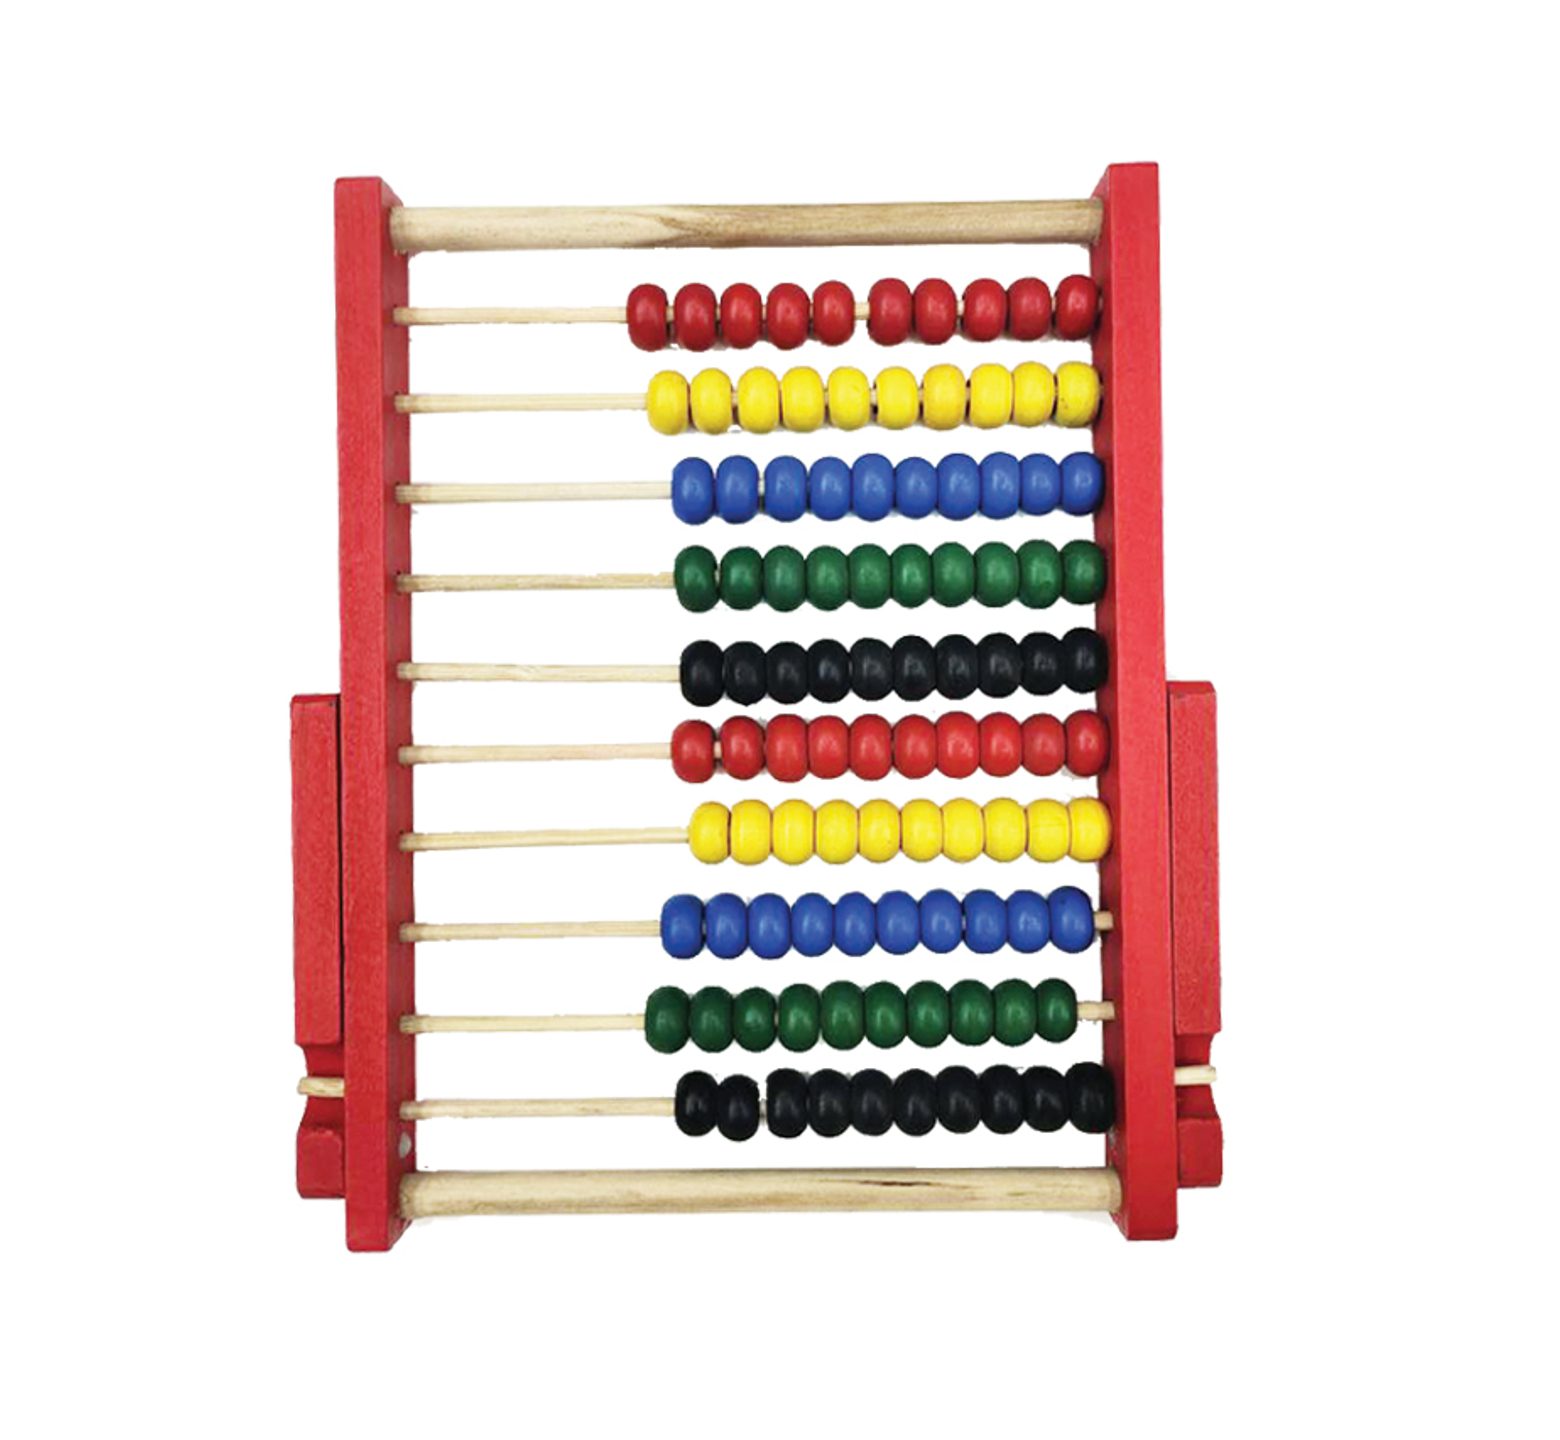 Αριθμητήριο όρθιο με βάση ξύλινο με 10 στήλες από 10 μπίλιες σε 4 διαφορετικά χρώματα